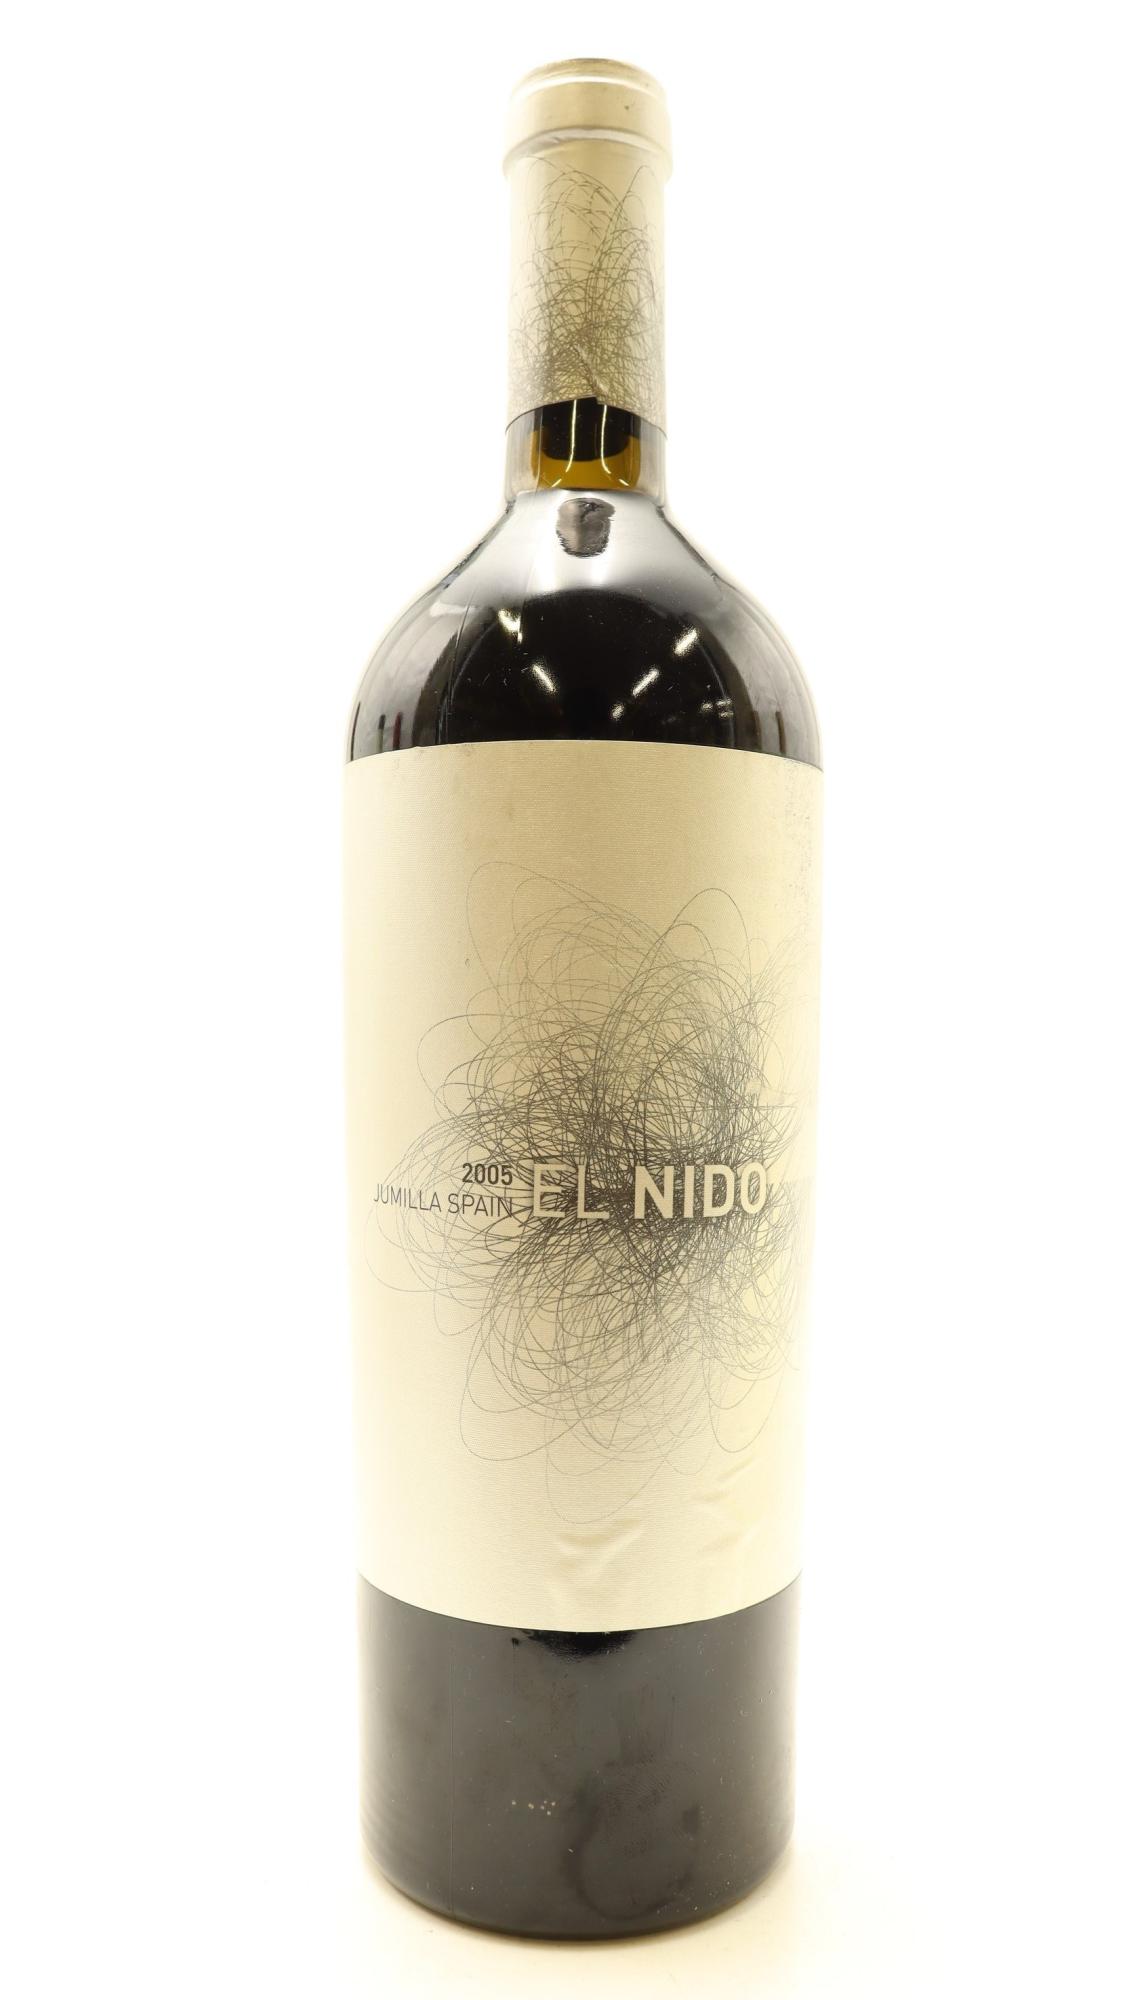 Buy Wine from winery El Nido